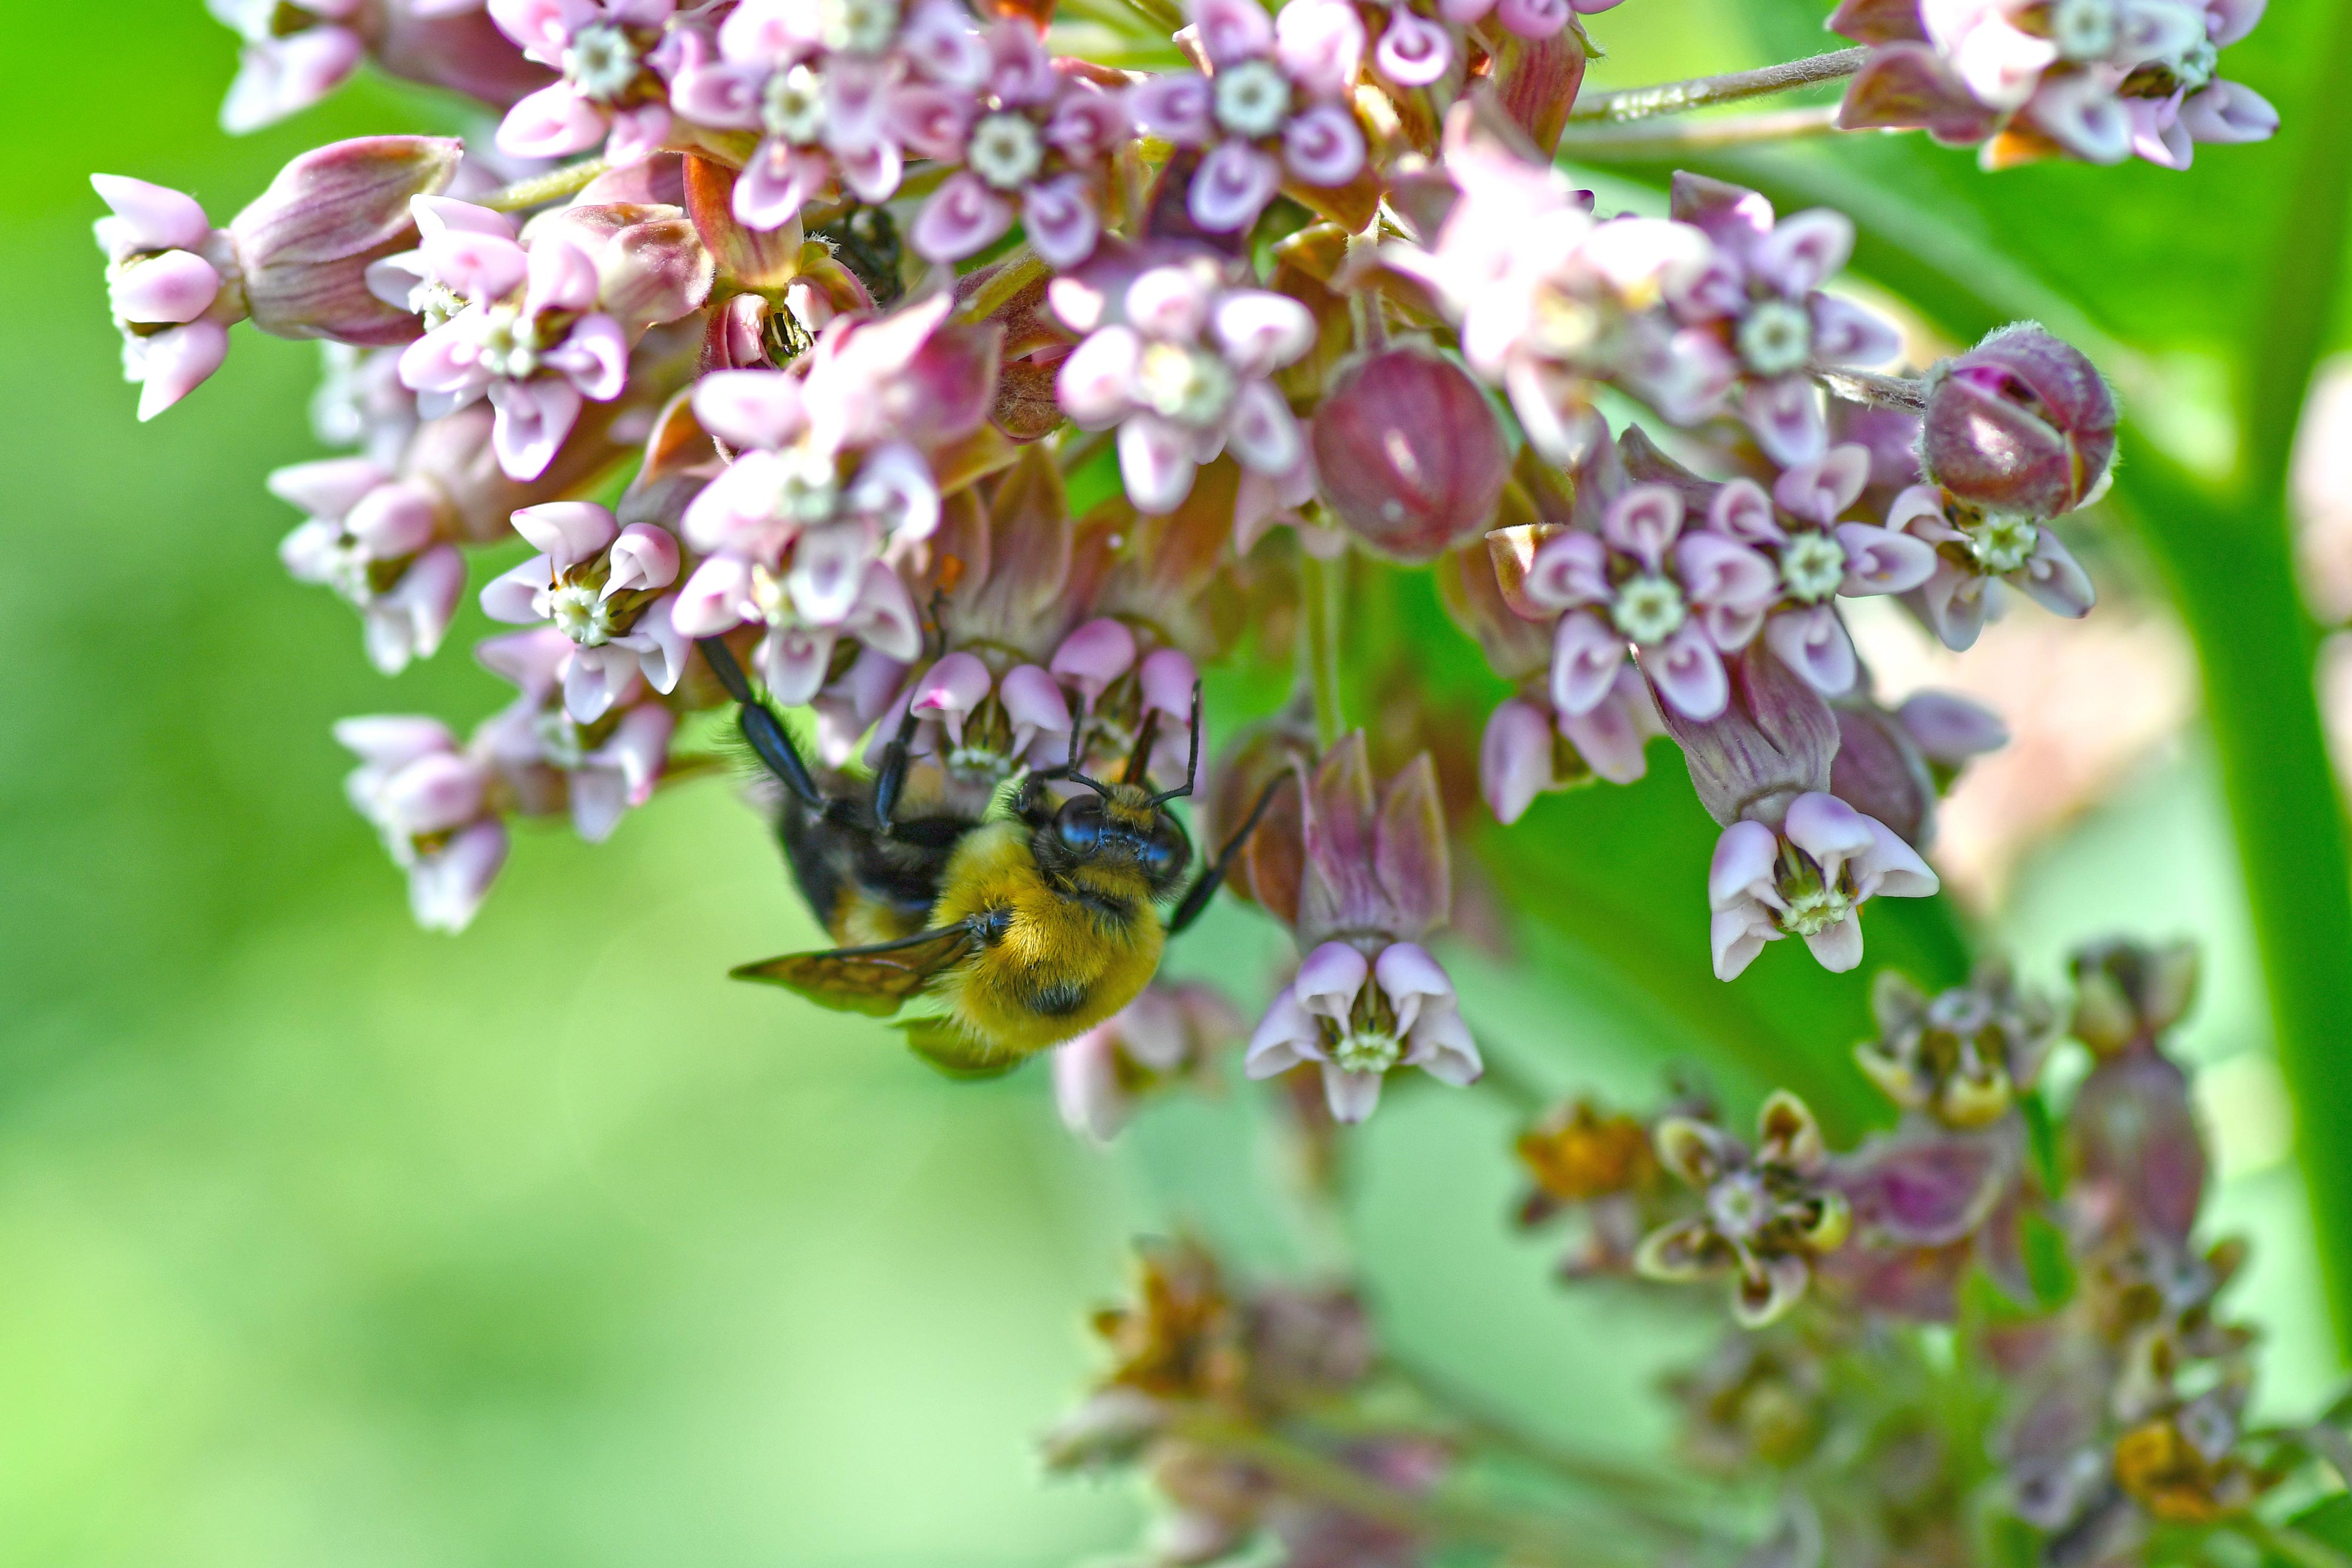 A bumble bee on milkweed.